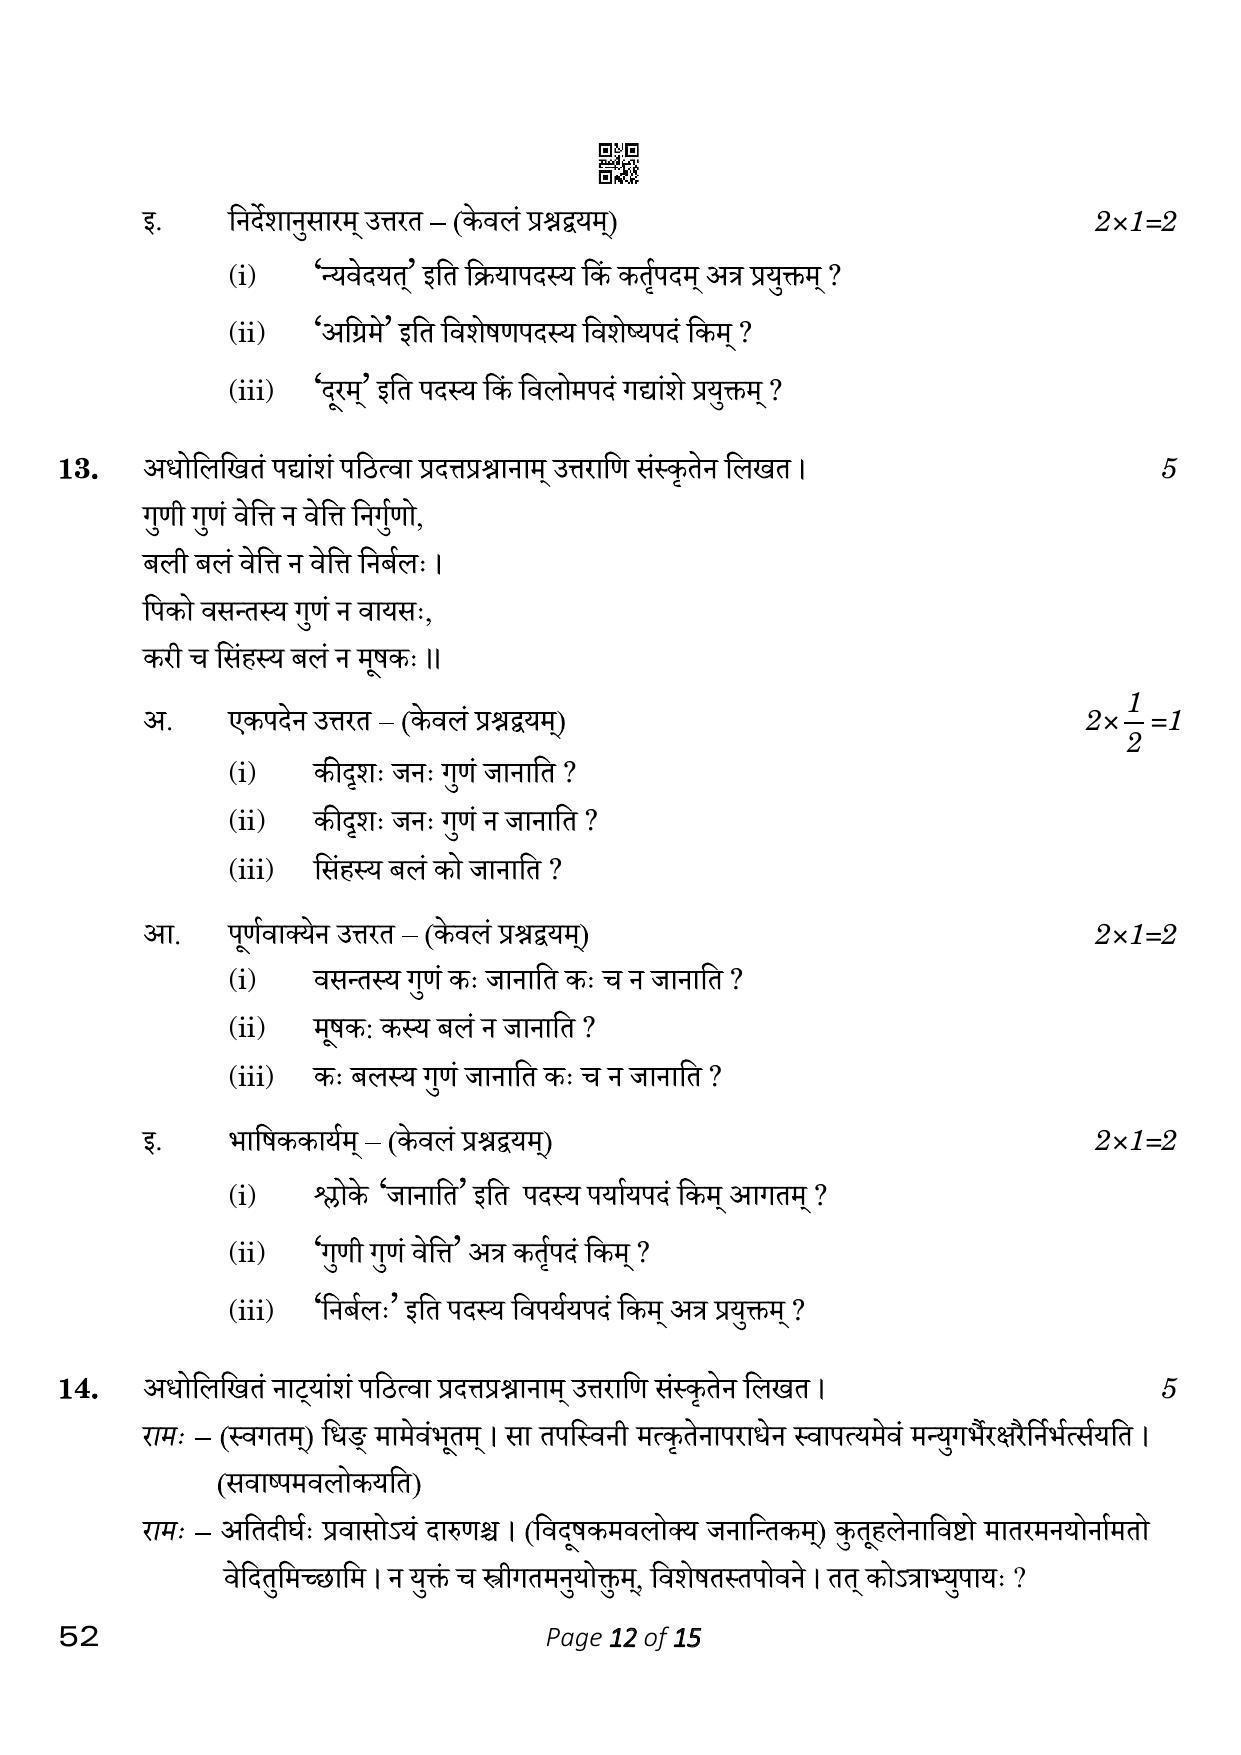 CBSE Class 10 Sanskrit (Compartment) 2023 Question Paper - Page 12